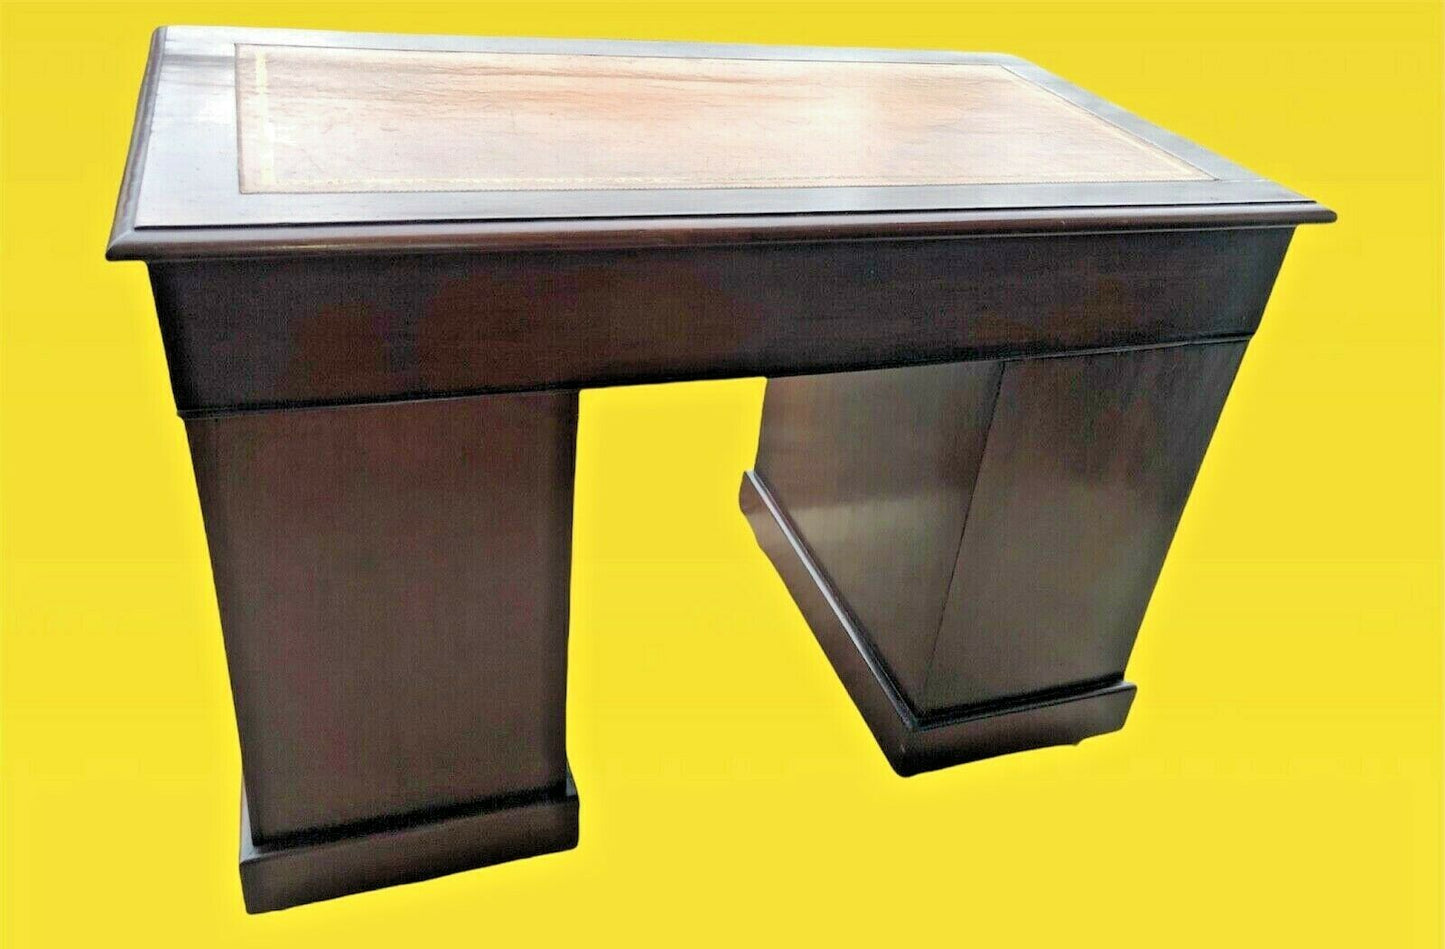 Handsome Edwardian Mahogany Pedestal Desk ( SOLD )